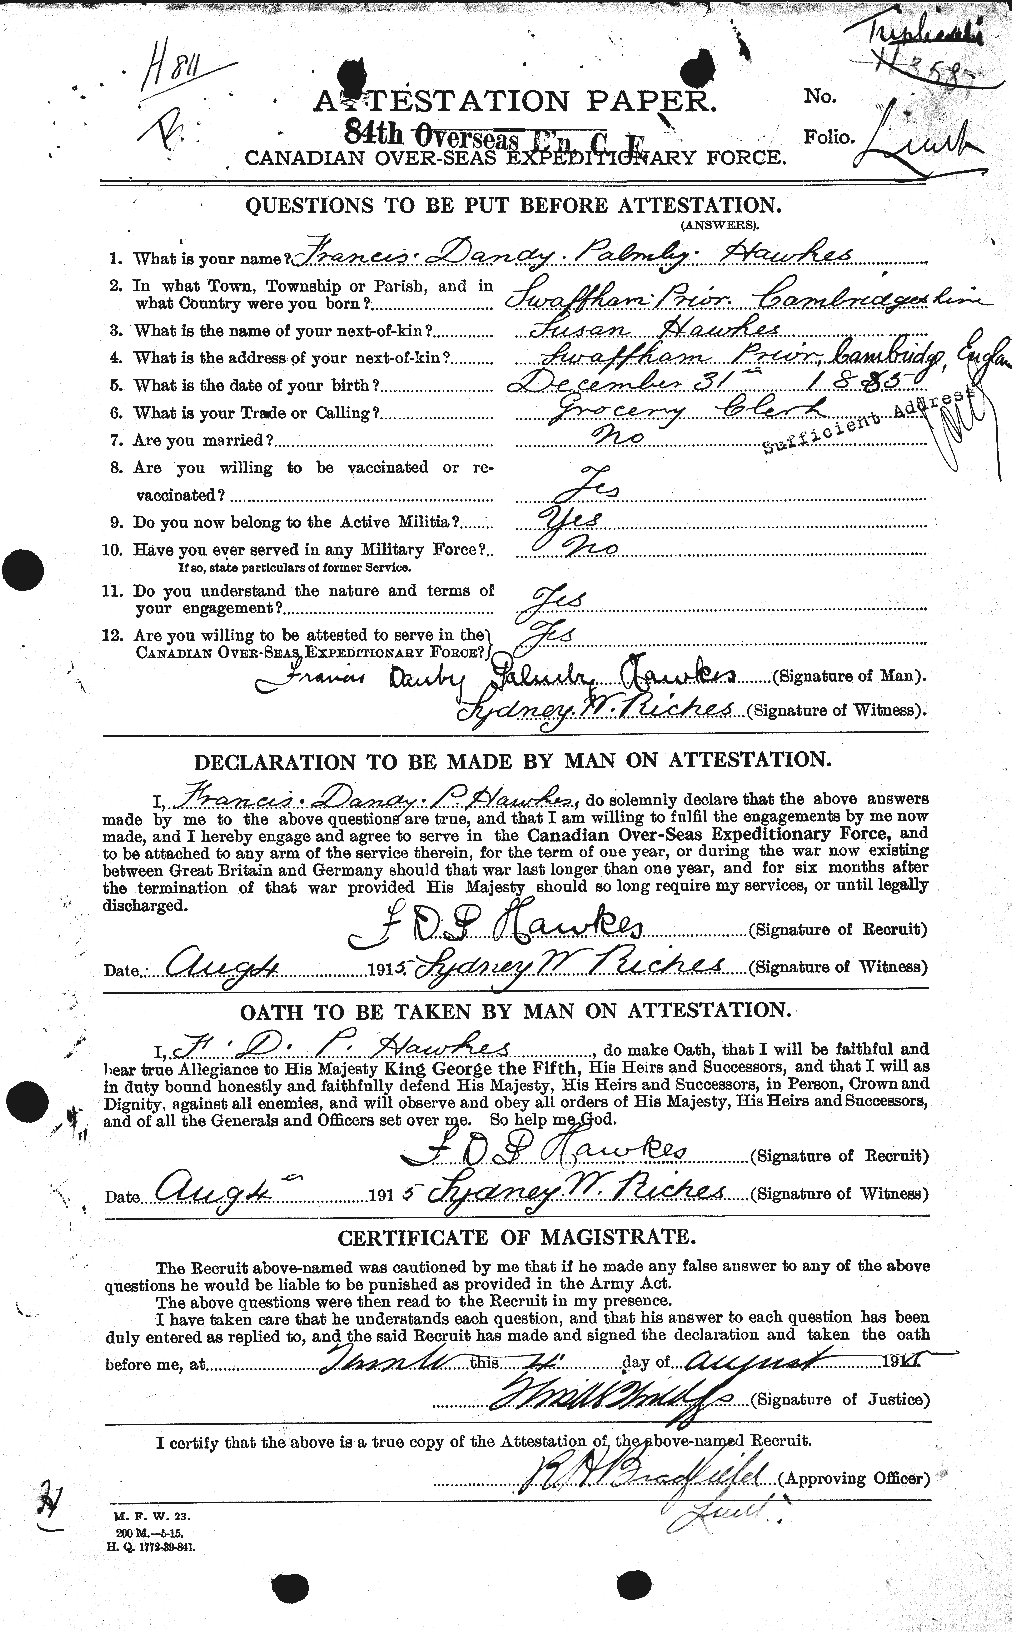 Dossiers du Personnel de la Première Guerre mondiale - CEC 384524a